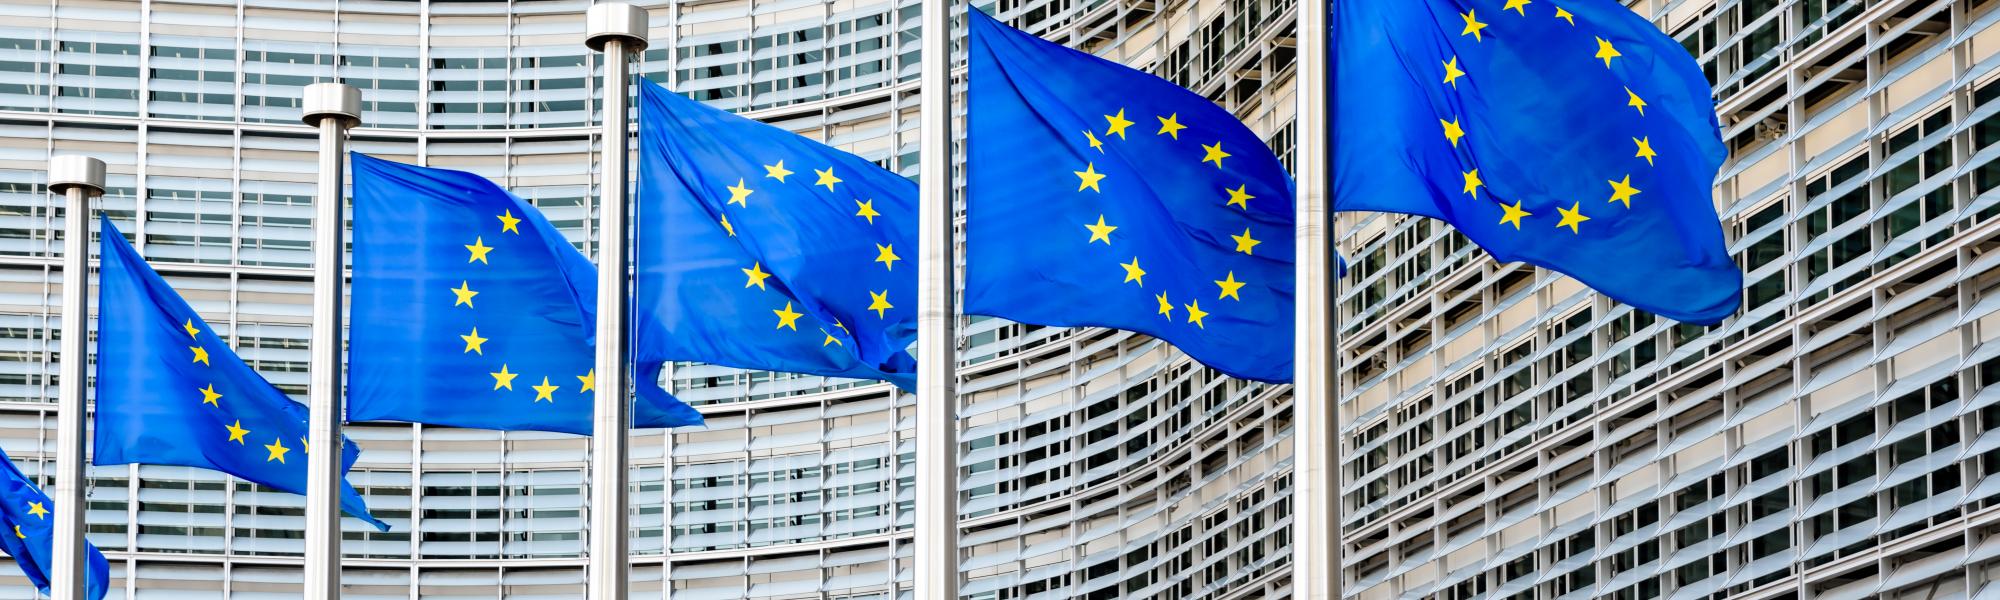 Driver shortages: IRU and EU commissioner explore solutions